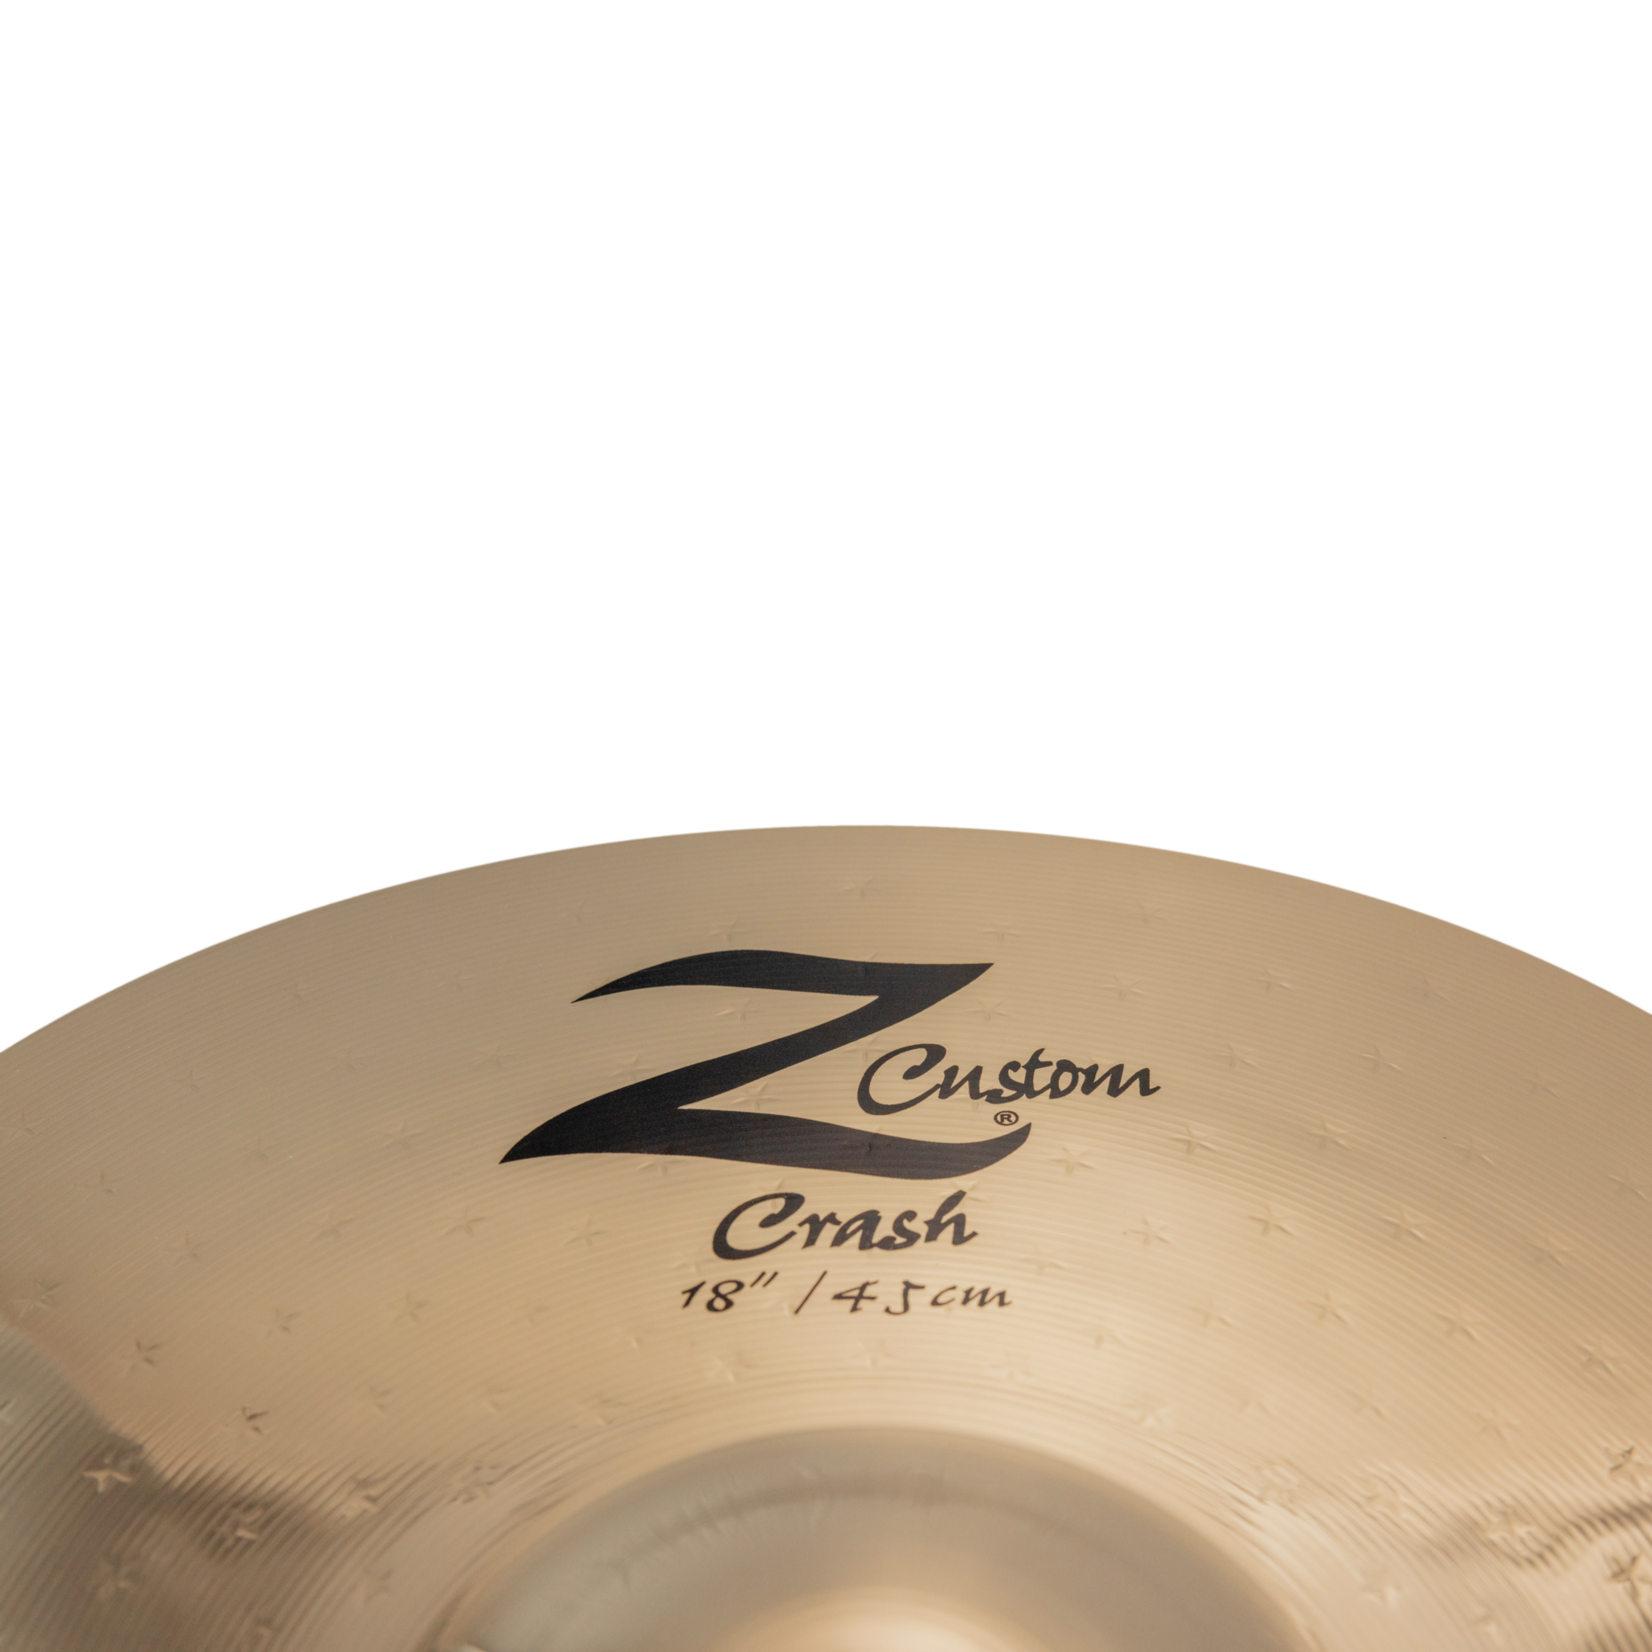 Zildjian Zildjian Z Custom 18